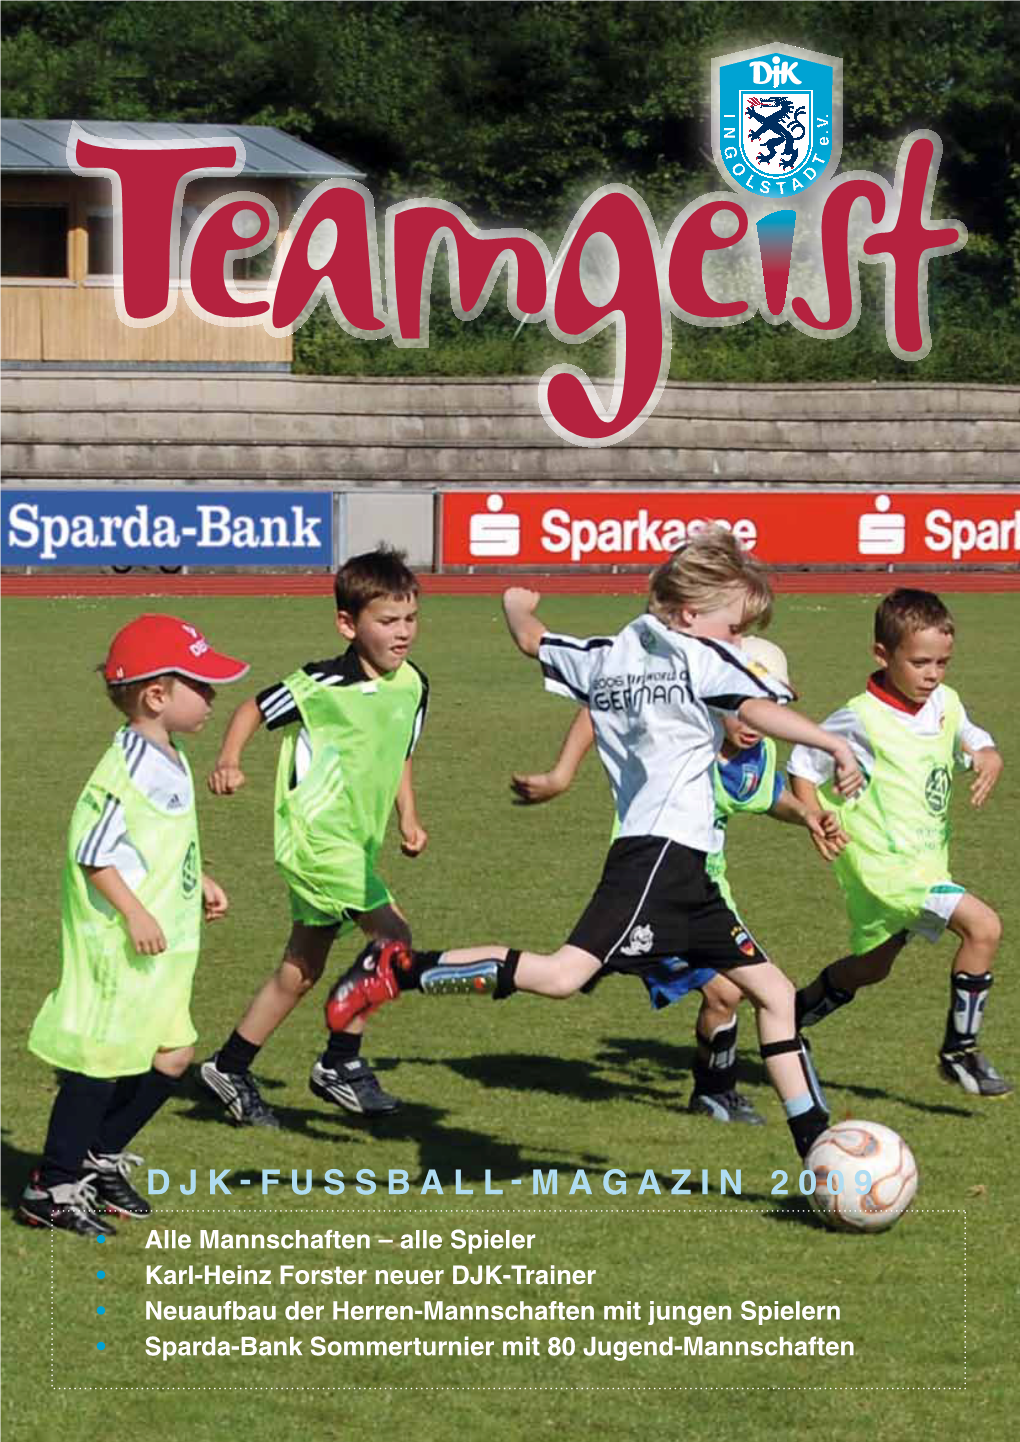 Djk-Fussball-Magazin 2009